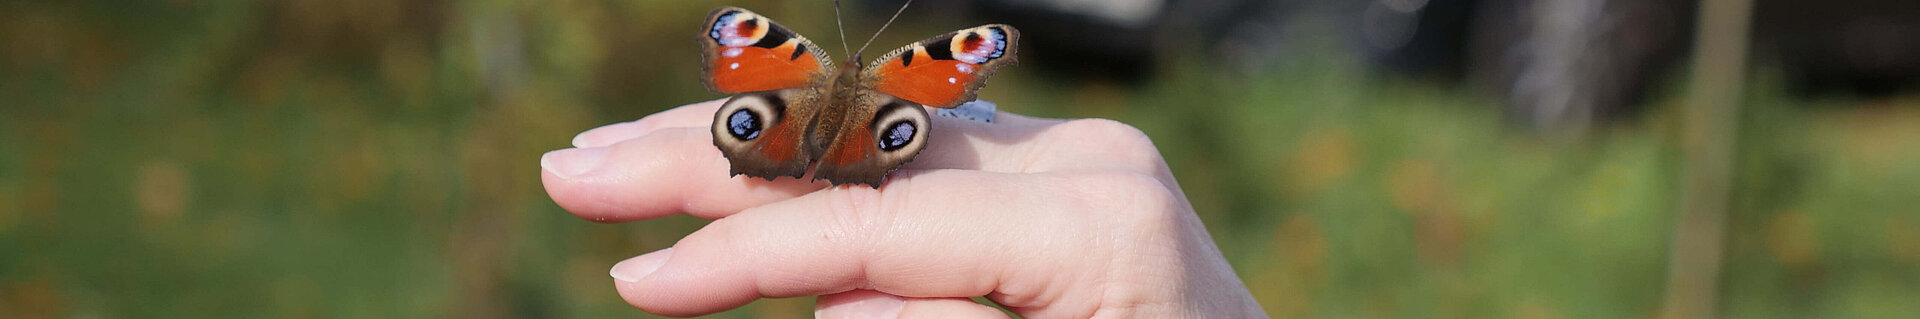 Ein Schmetterling auf der Hand.